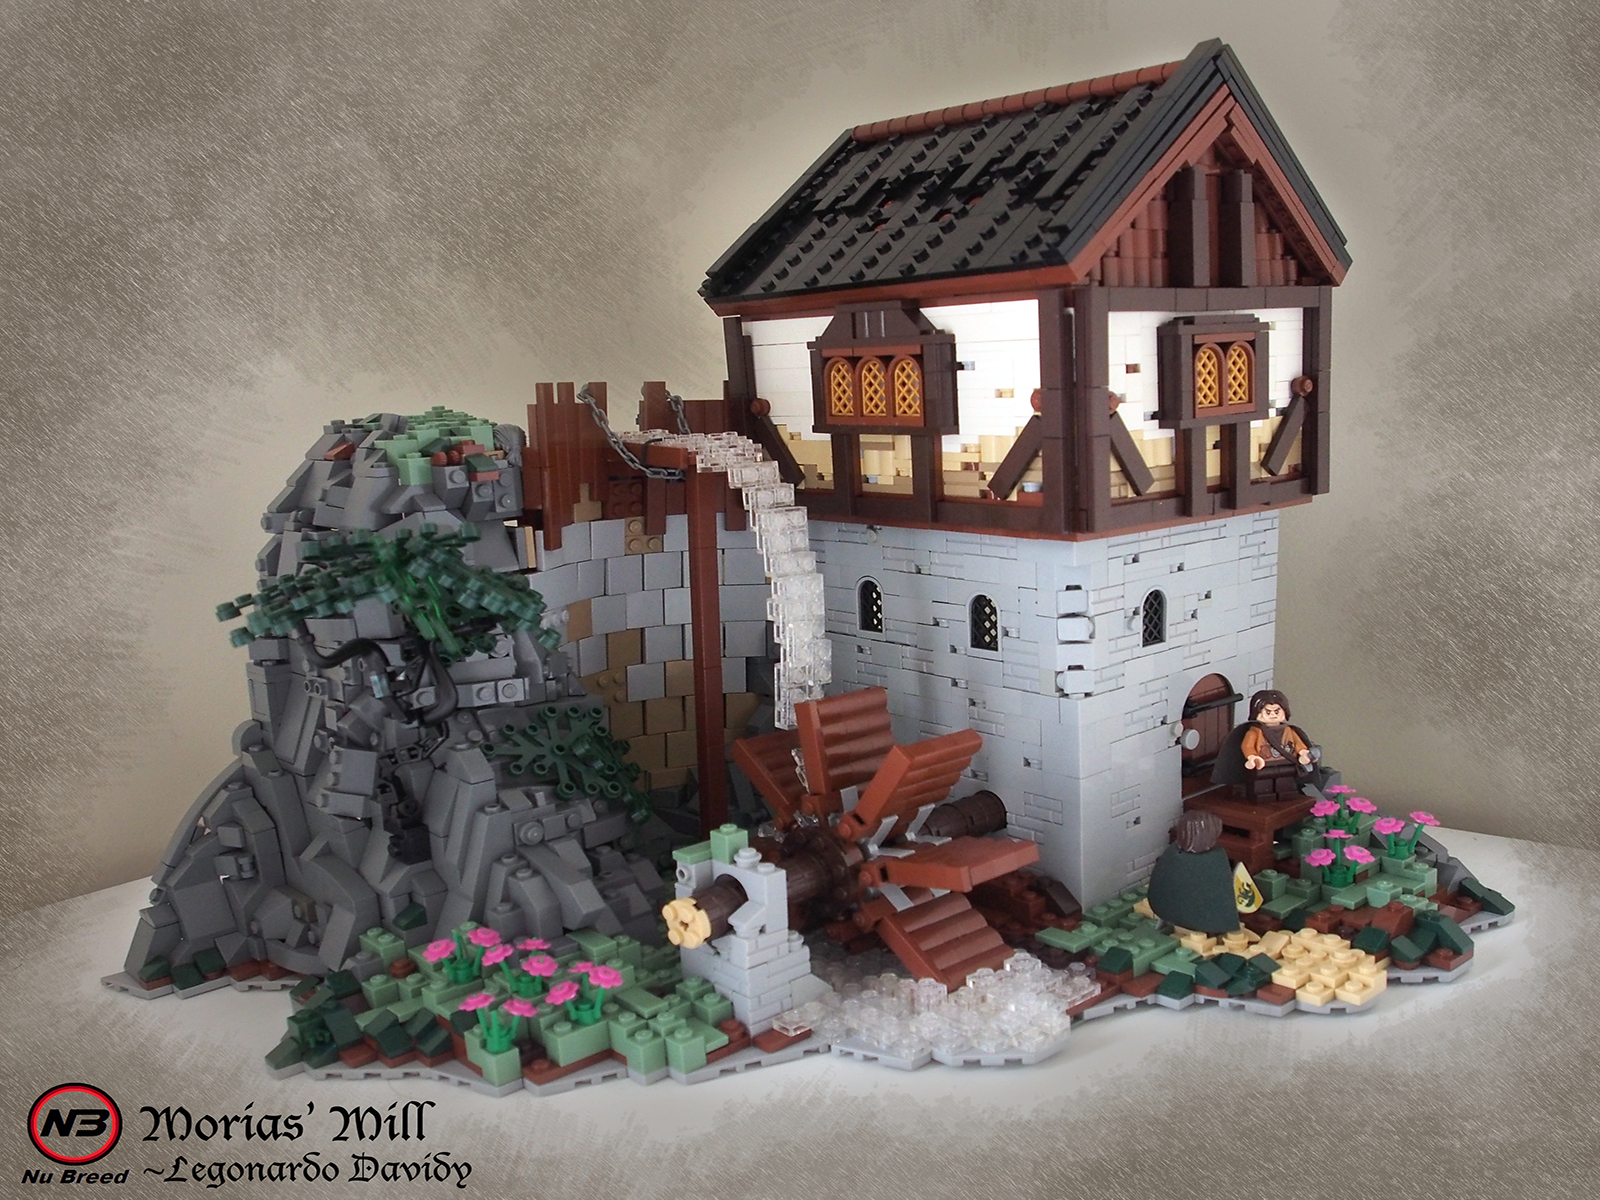 Kiến trúc thời trung cổ sống động dưới hình dáng Lego - Kỳ 1